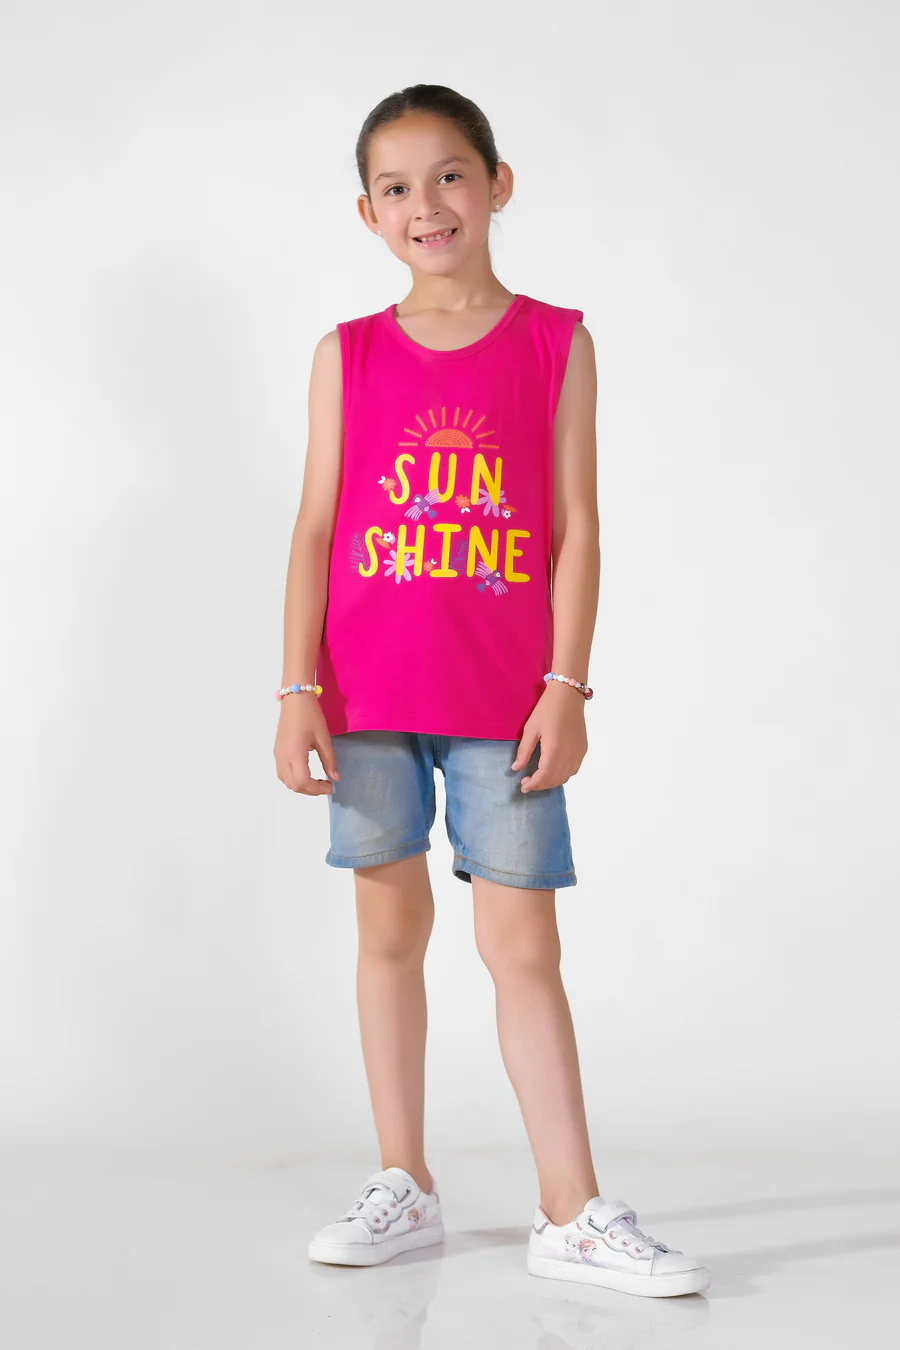 Sun Shine Printed Sandos For Girls - Pink